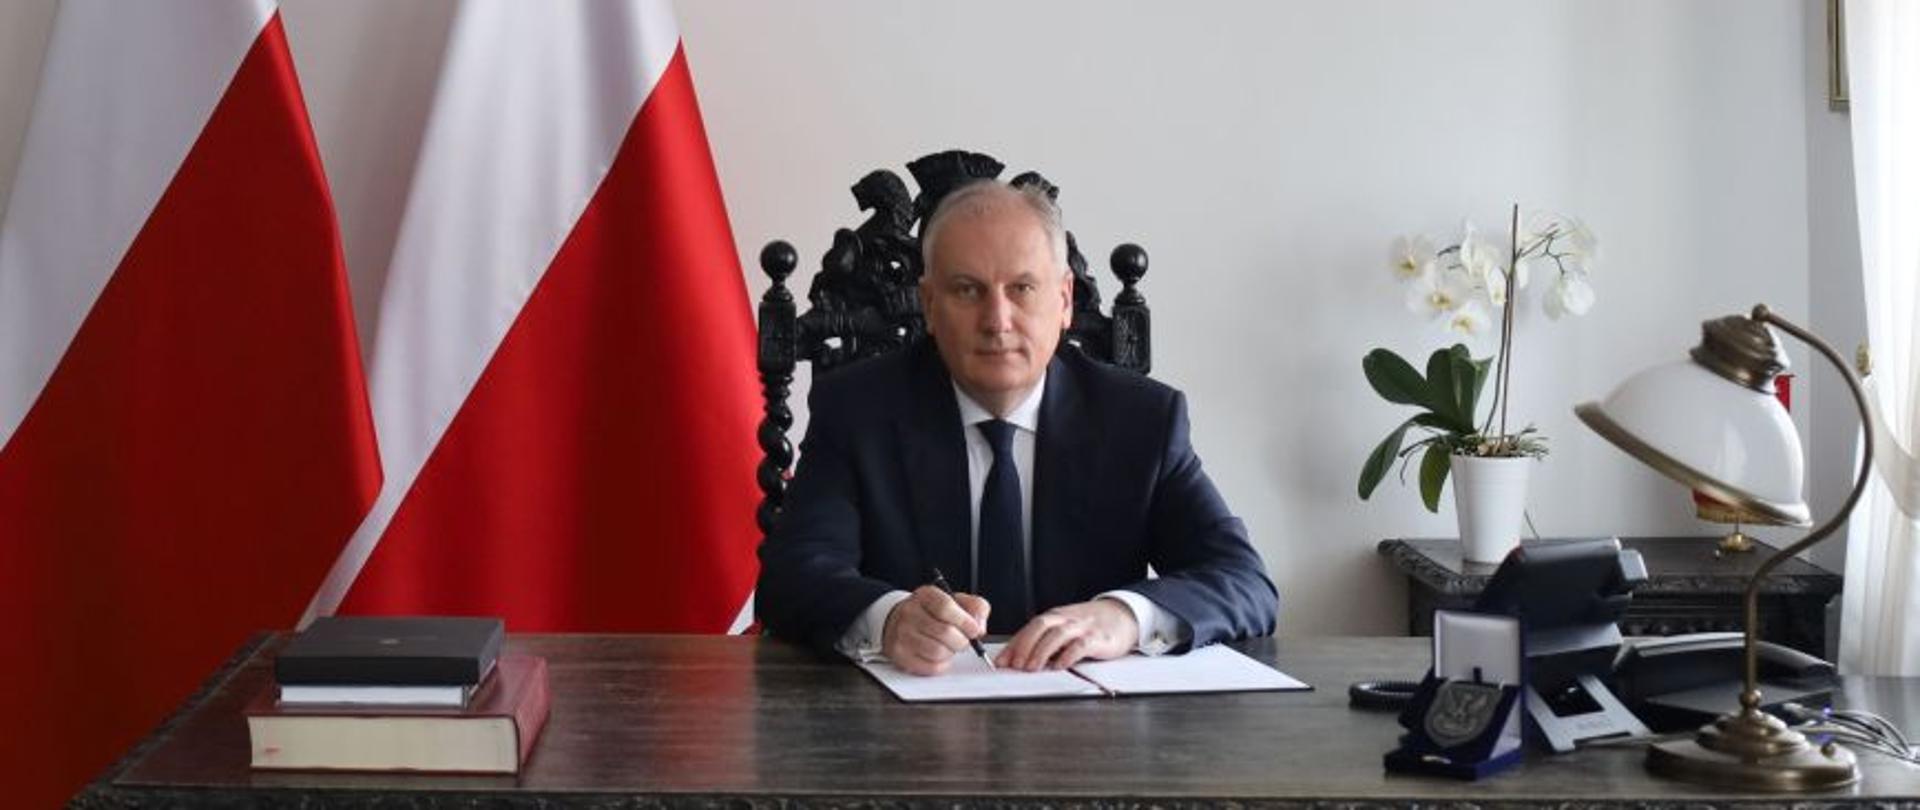 Mężczyzna siedzi za biurkiem podpisując dokument za nim są dwie flagi Polski na ścianie wisi godło Polski.